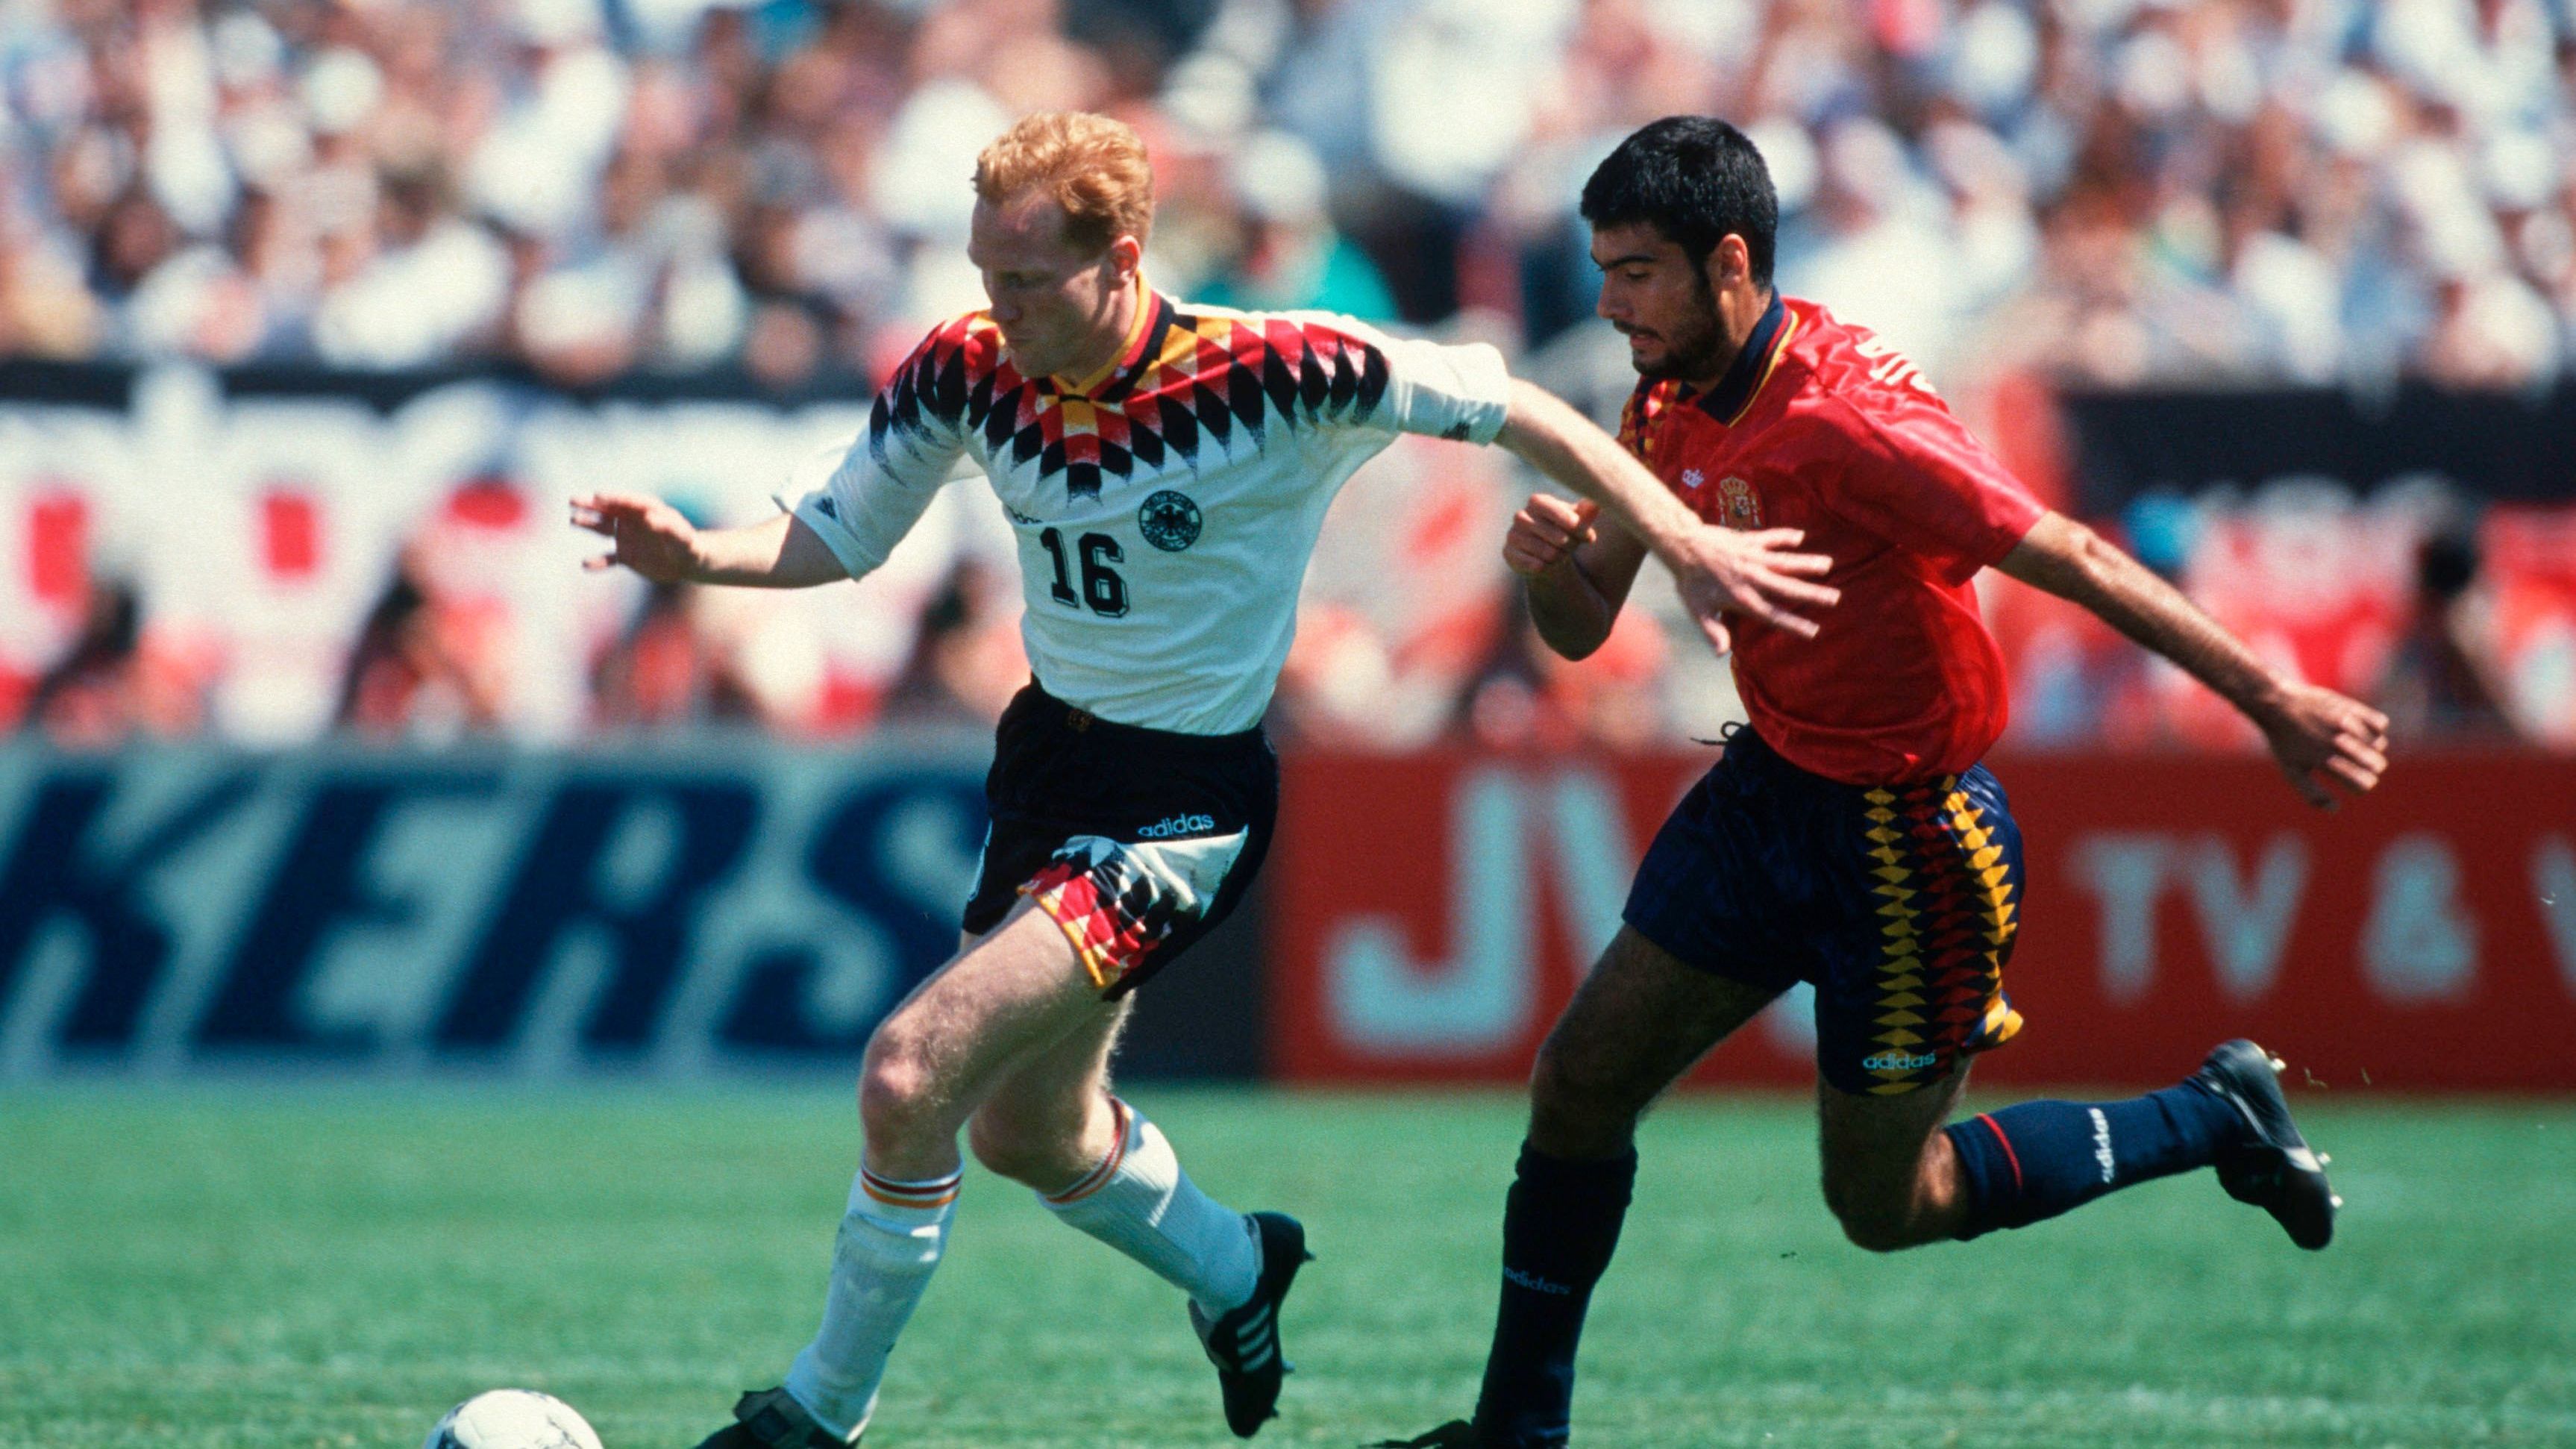 <strong>WM 1994, 2. Spieltag, Spanien - Deutschland 1:1</strong><br>Davor schoss der damalige Barca-Profi Goikoetxea sein Team im Soldier Field in Chicago vor über 60.000 Zuschauern früh in Führung. Dank der beiden Dreier gegen Bolivien und Südkorea holte Deutschland schließlich den Gruppensieg, doch im Viertelfinale war Schluss: Matthäus versenkte zwar einen Elfmeter zum 1:0, aber die Bulgaren drehten das Spiel.&nbsp;